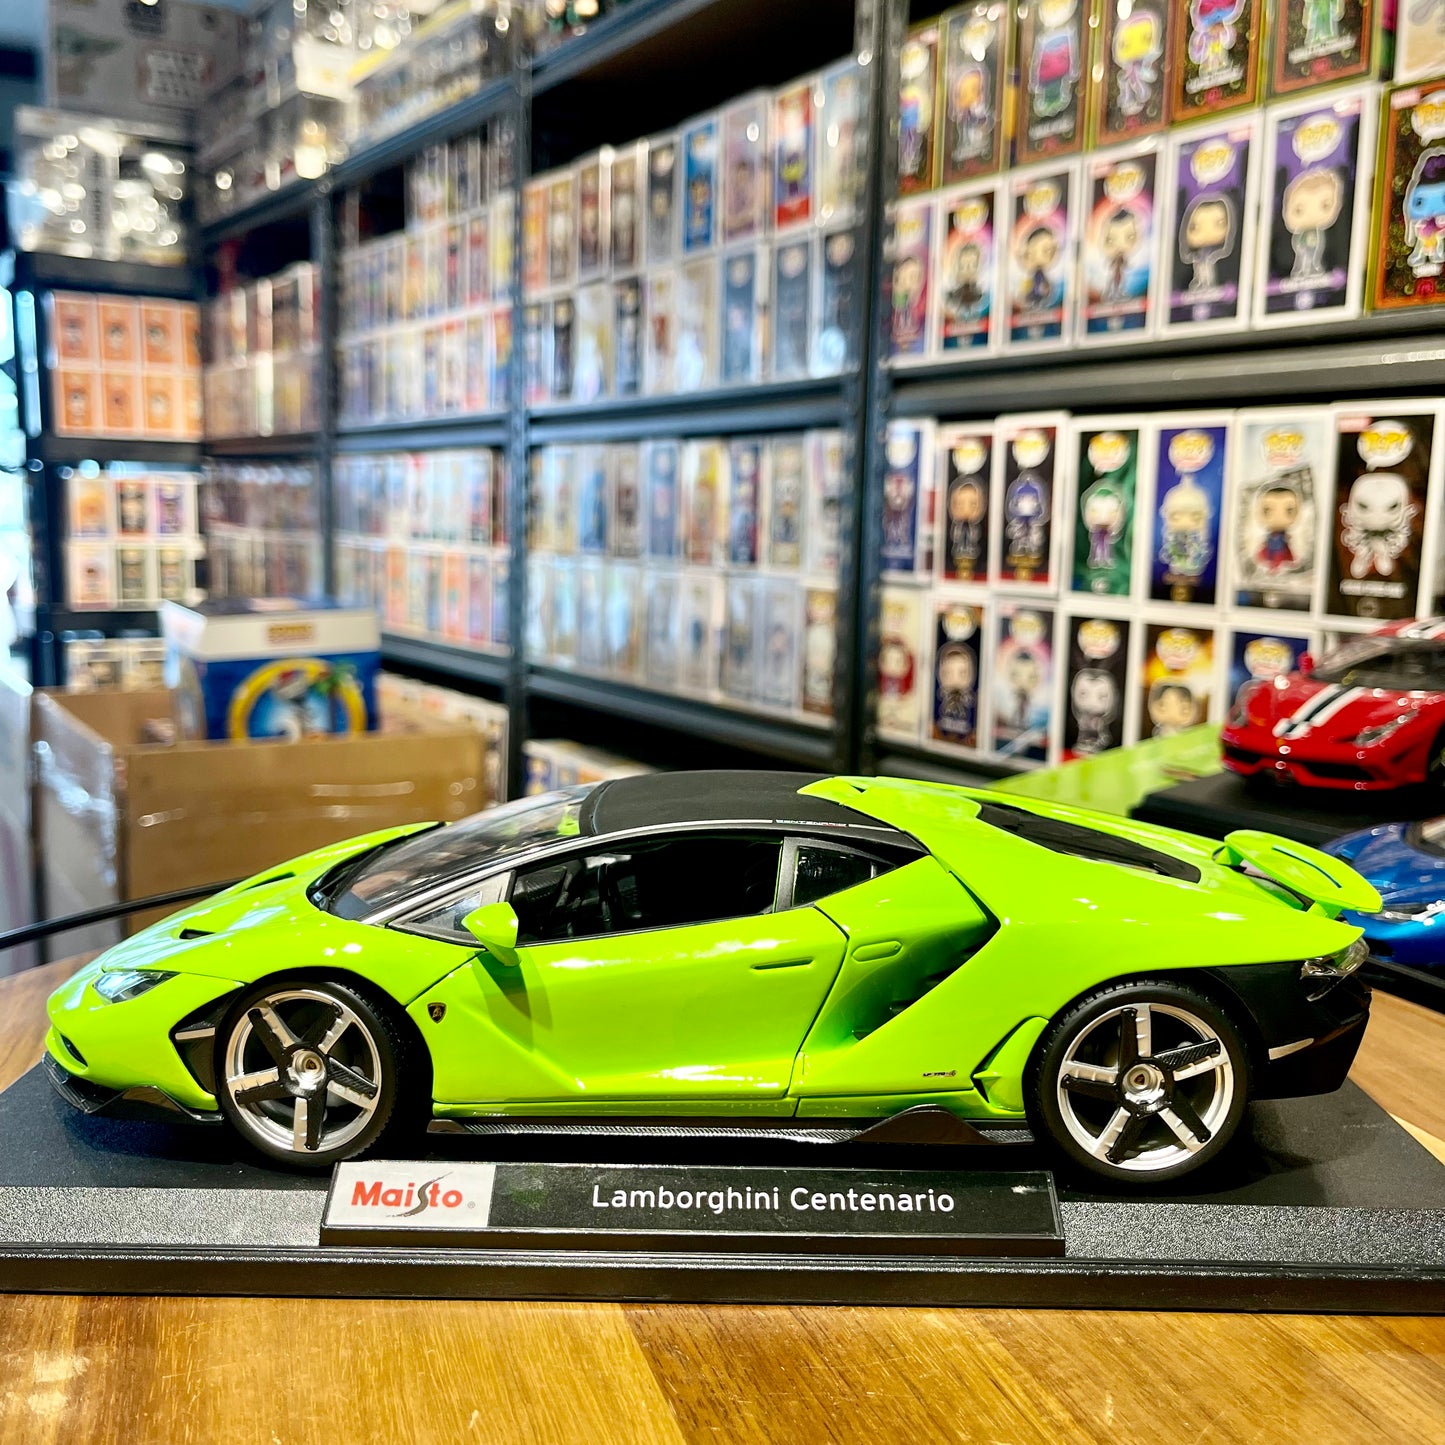 Maisto: Lamborghini Centenario 1:18 scale